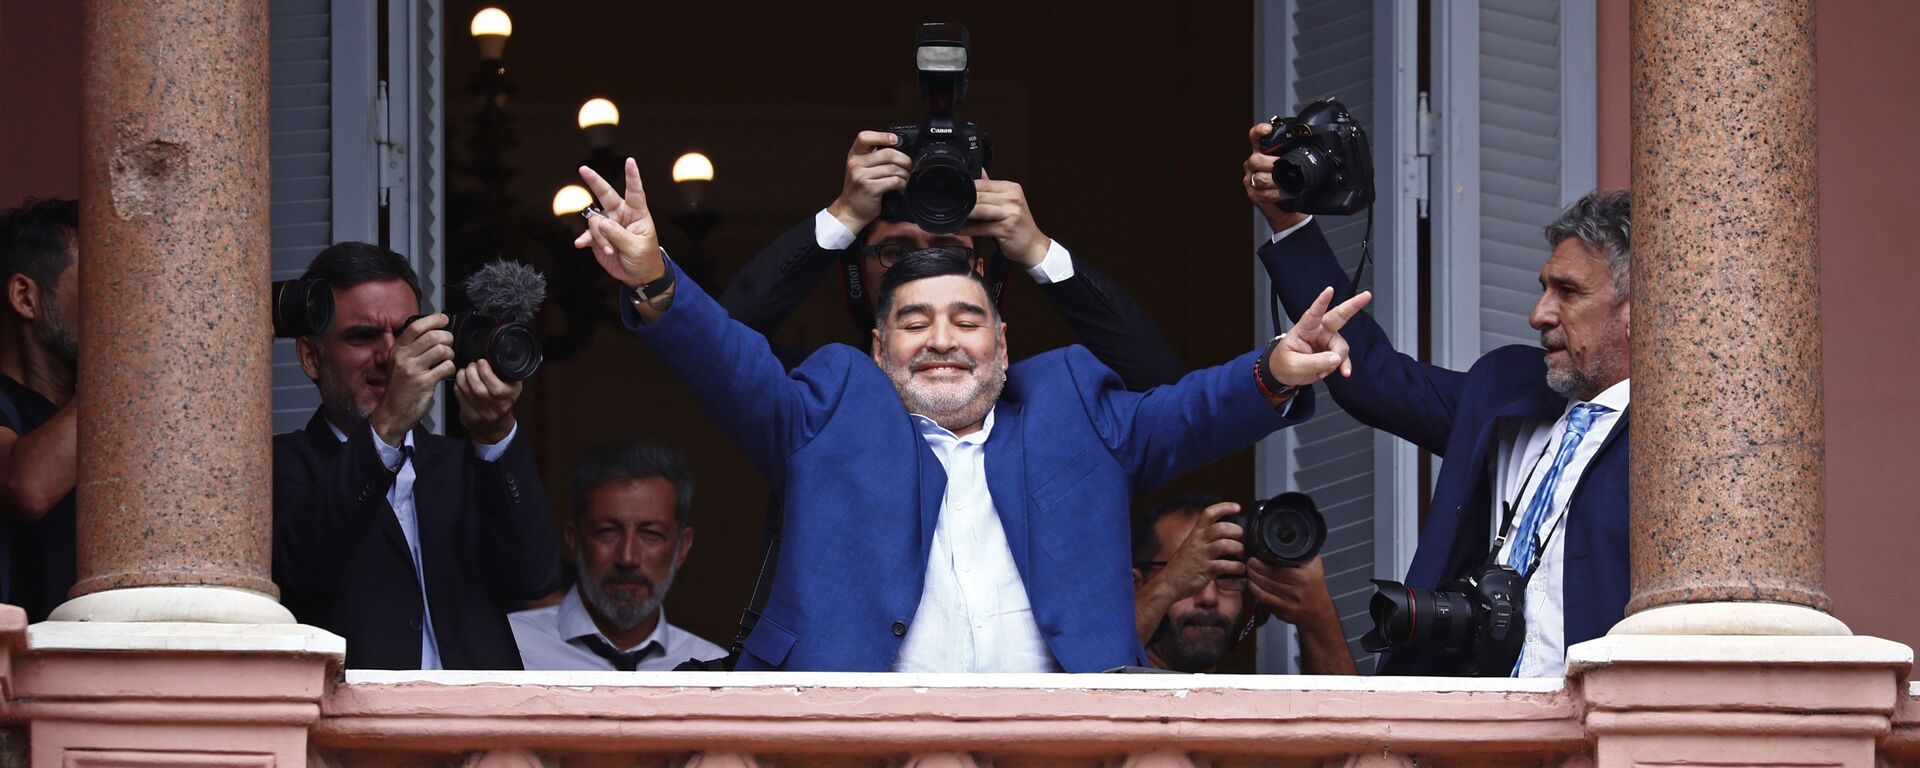 Diego Armando Maradona saludando desde el balcón de la Casa Rosada - Sputnik Mundo, 1920, 25.11.2020